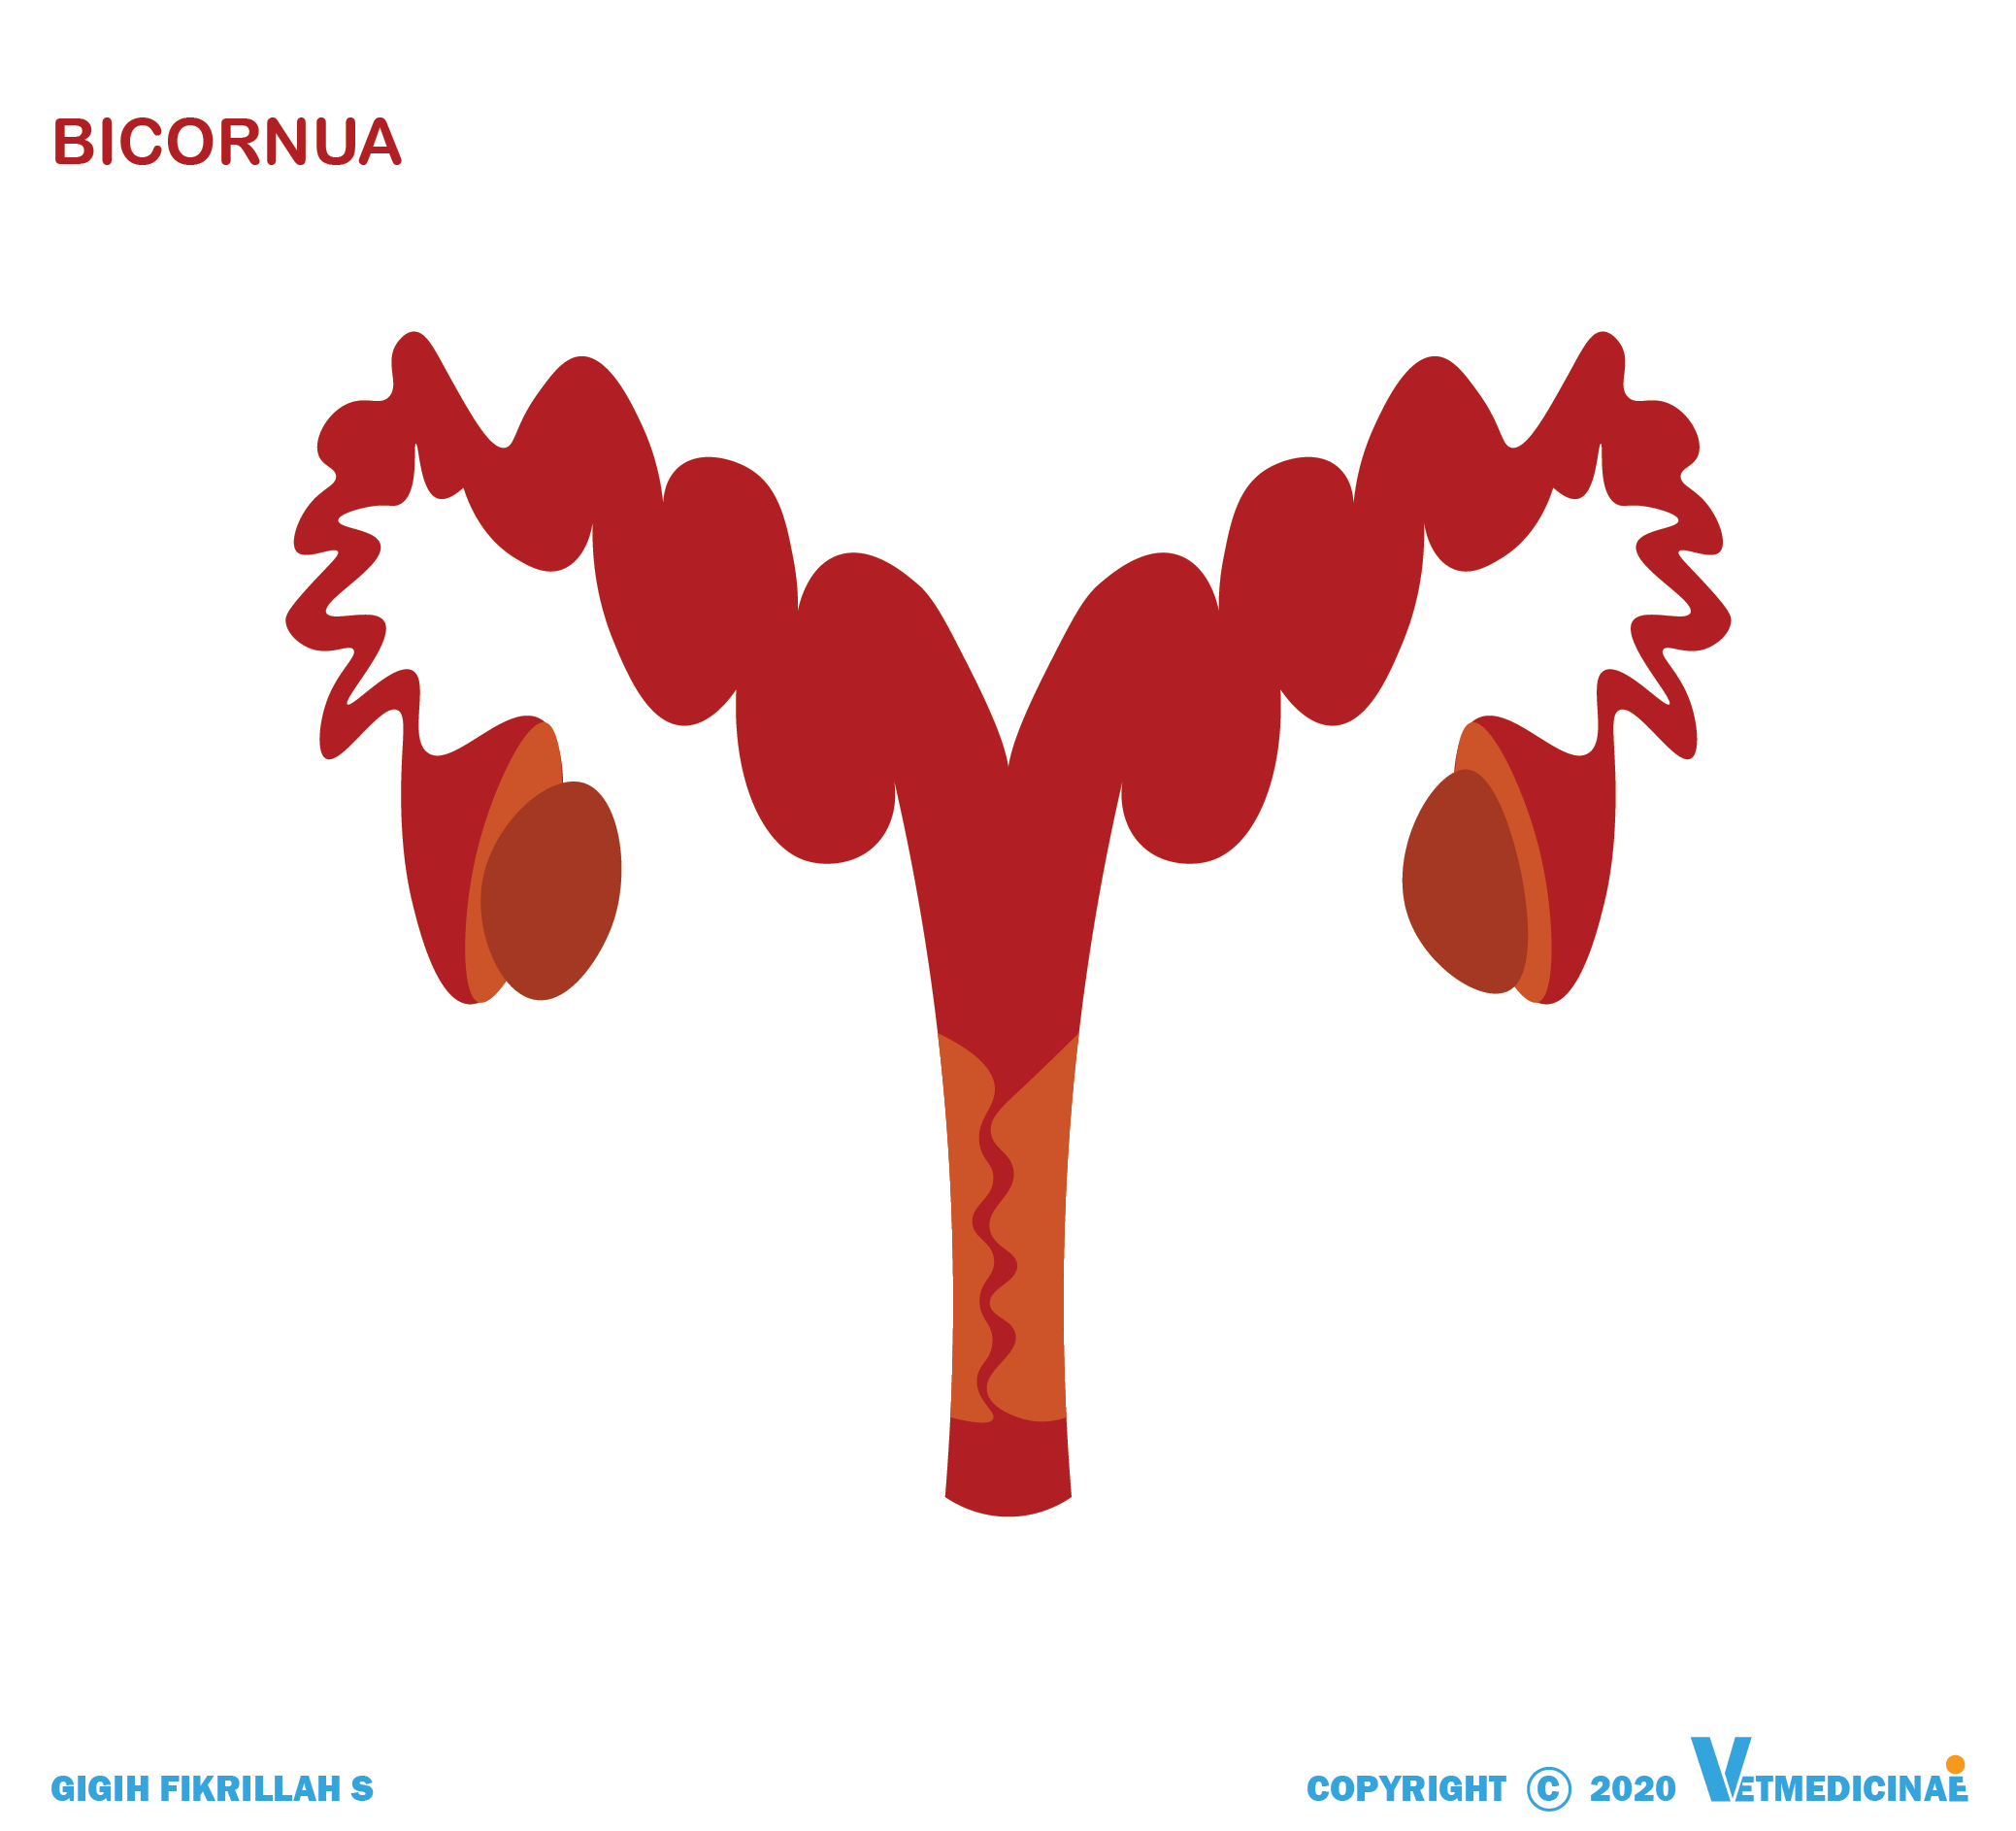 tipe uterus bicornua